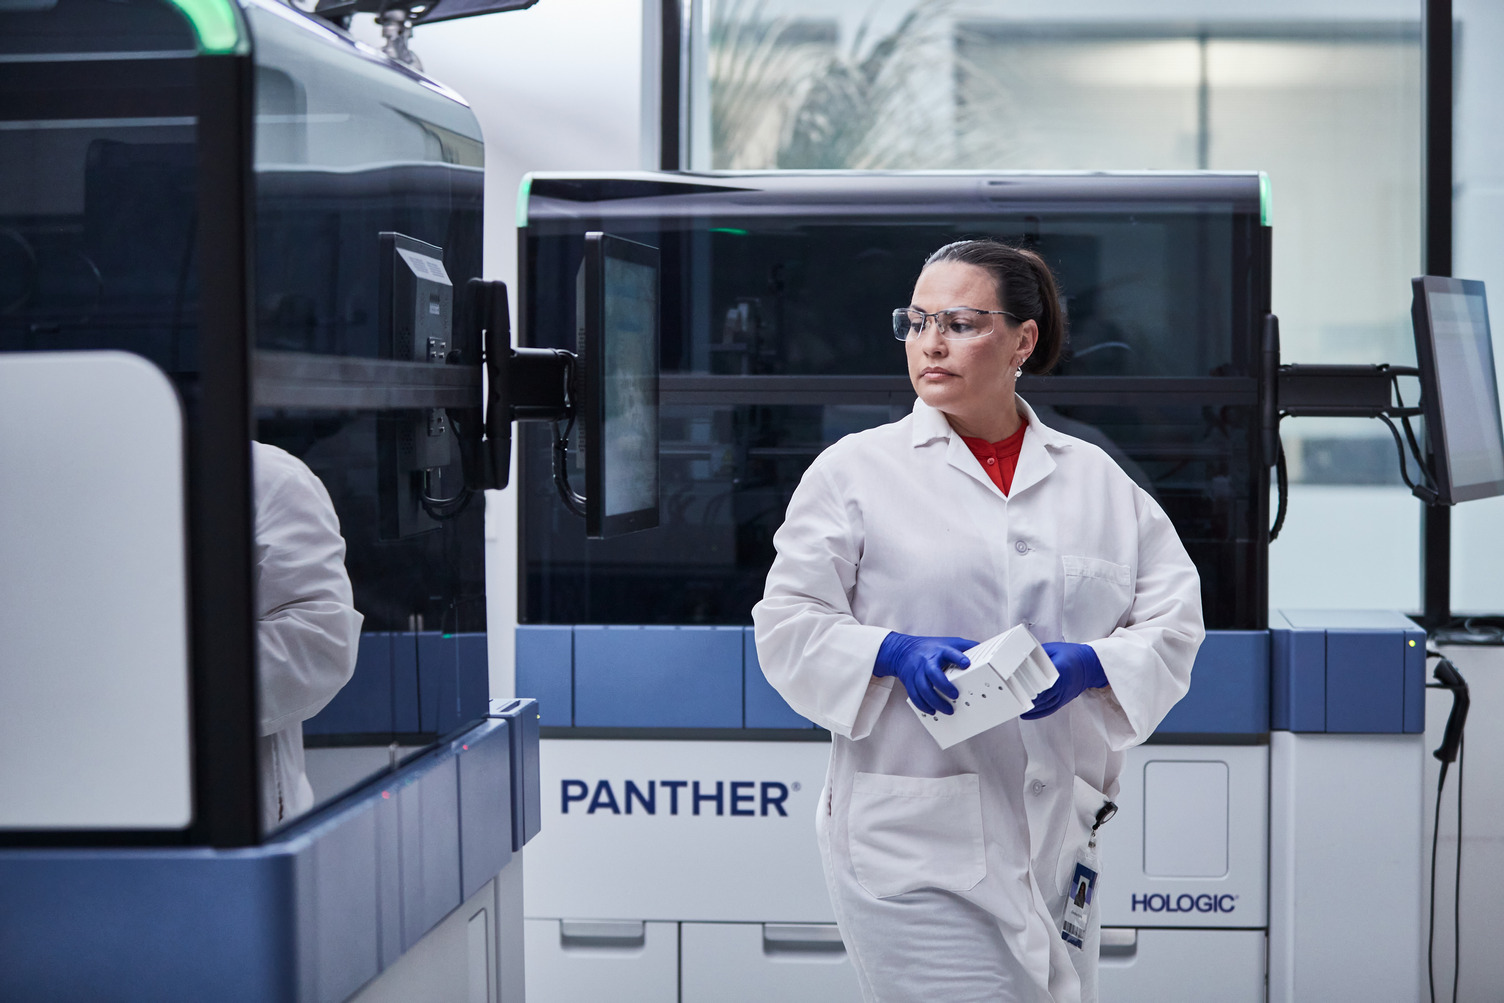 Female technician walks through lab setting.